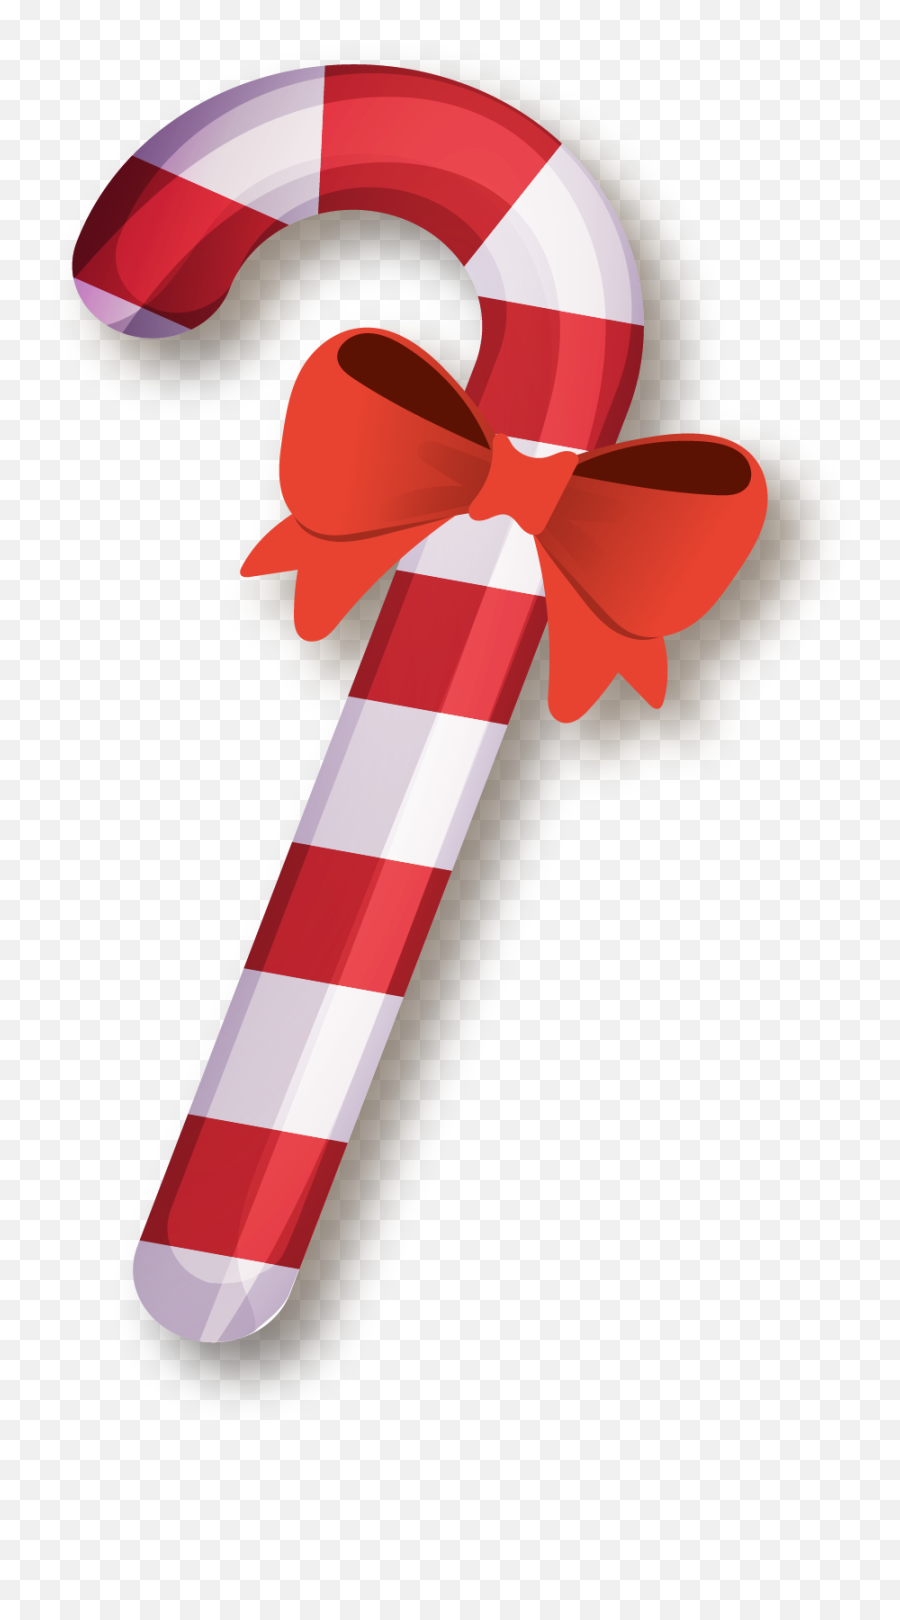 Candy Cane Christmas Sugar - Christmas Transparent Candy Cane Emoji,Xmas Candy Cane Emojis